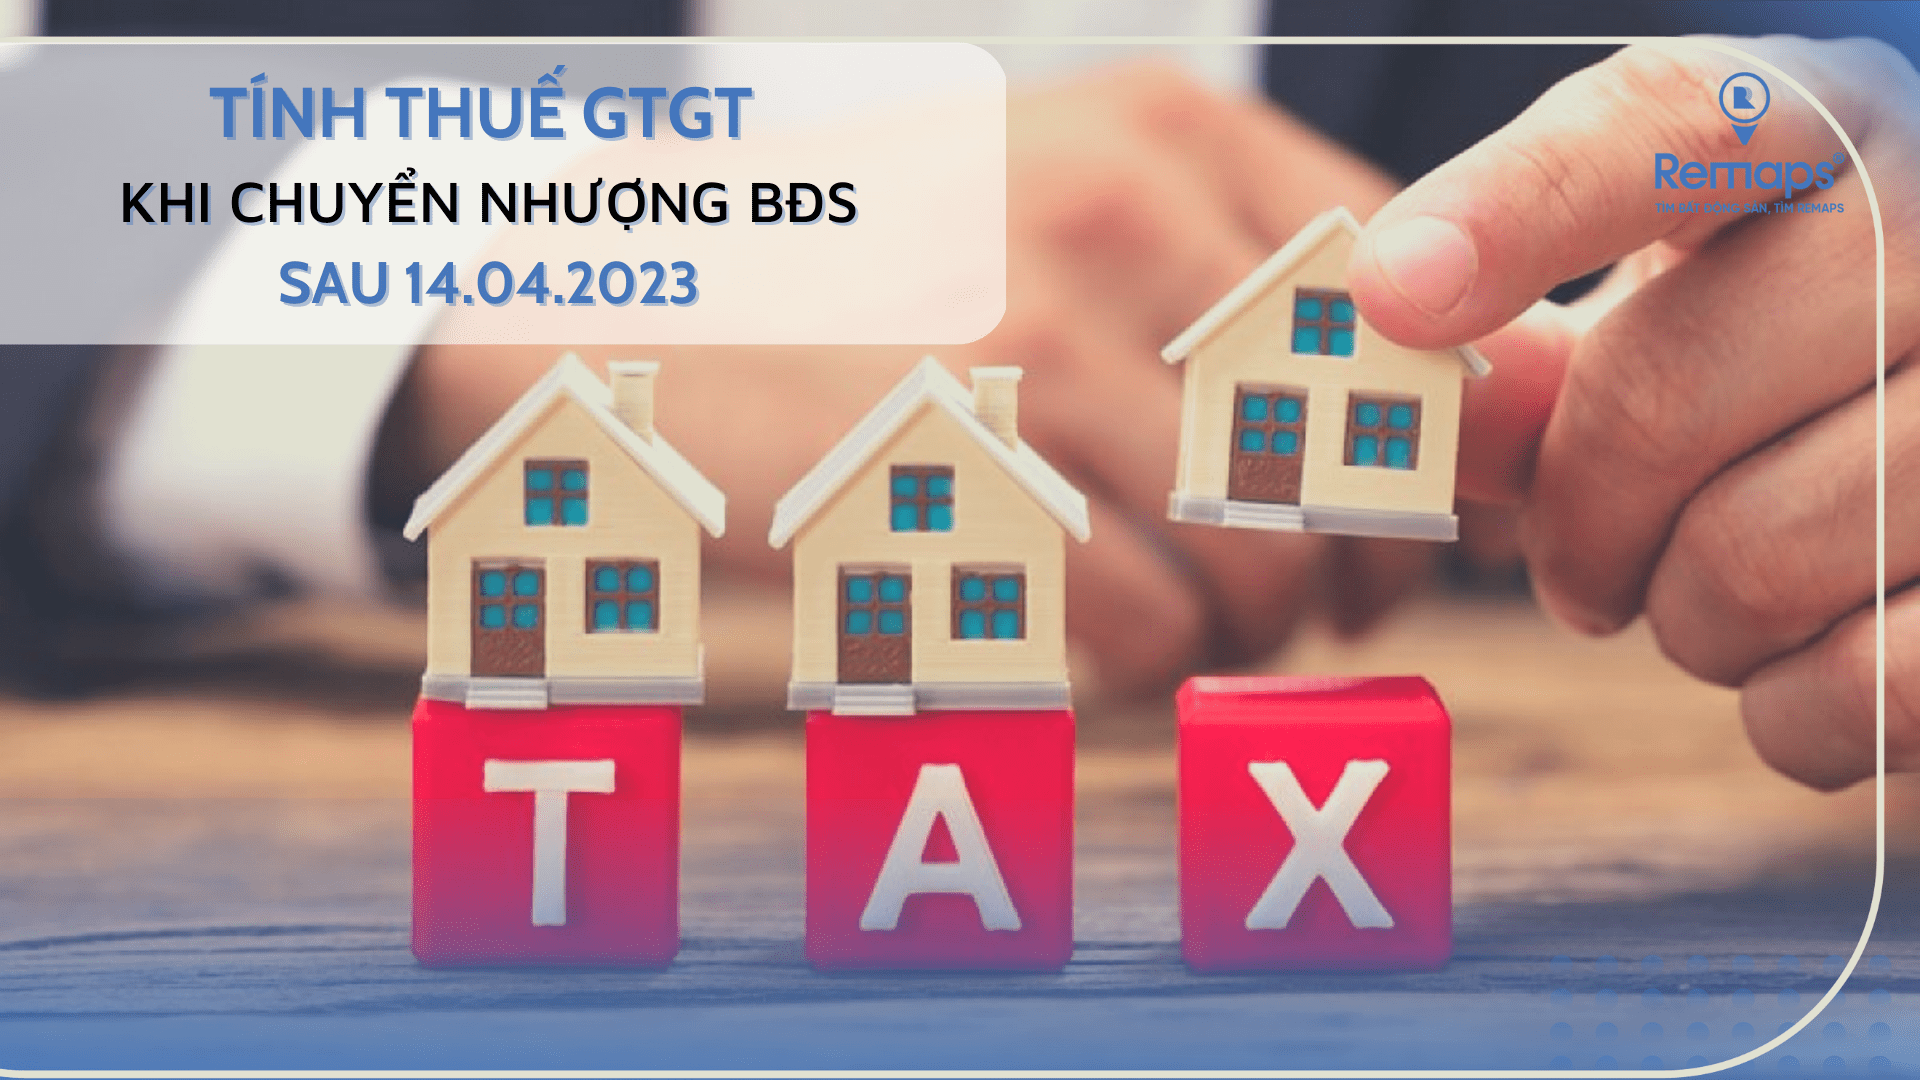 Tính thuế GTGT khi chuyển nhượng bất động sản thế nào?